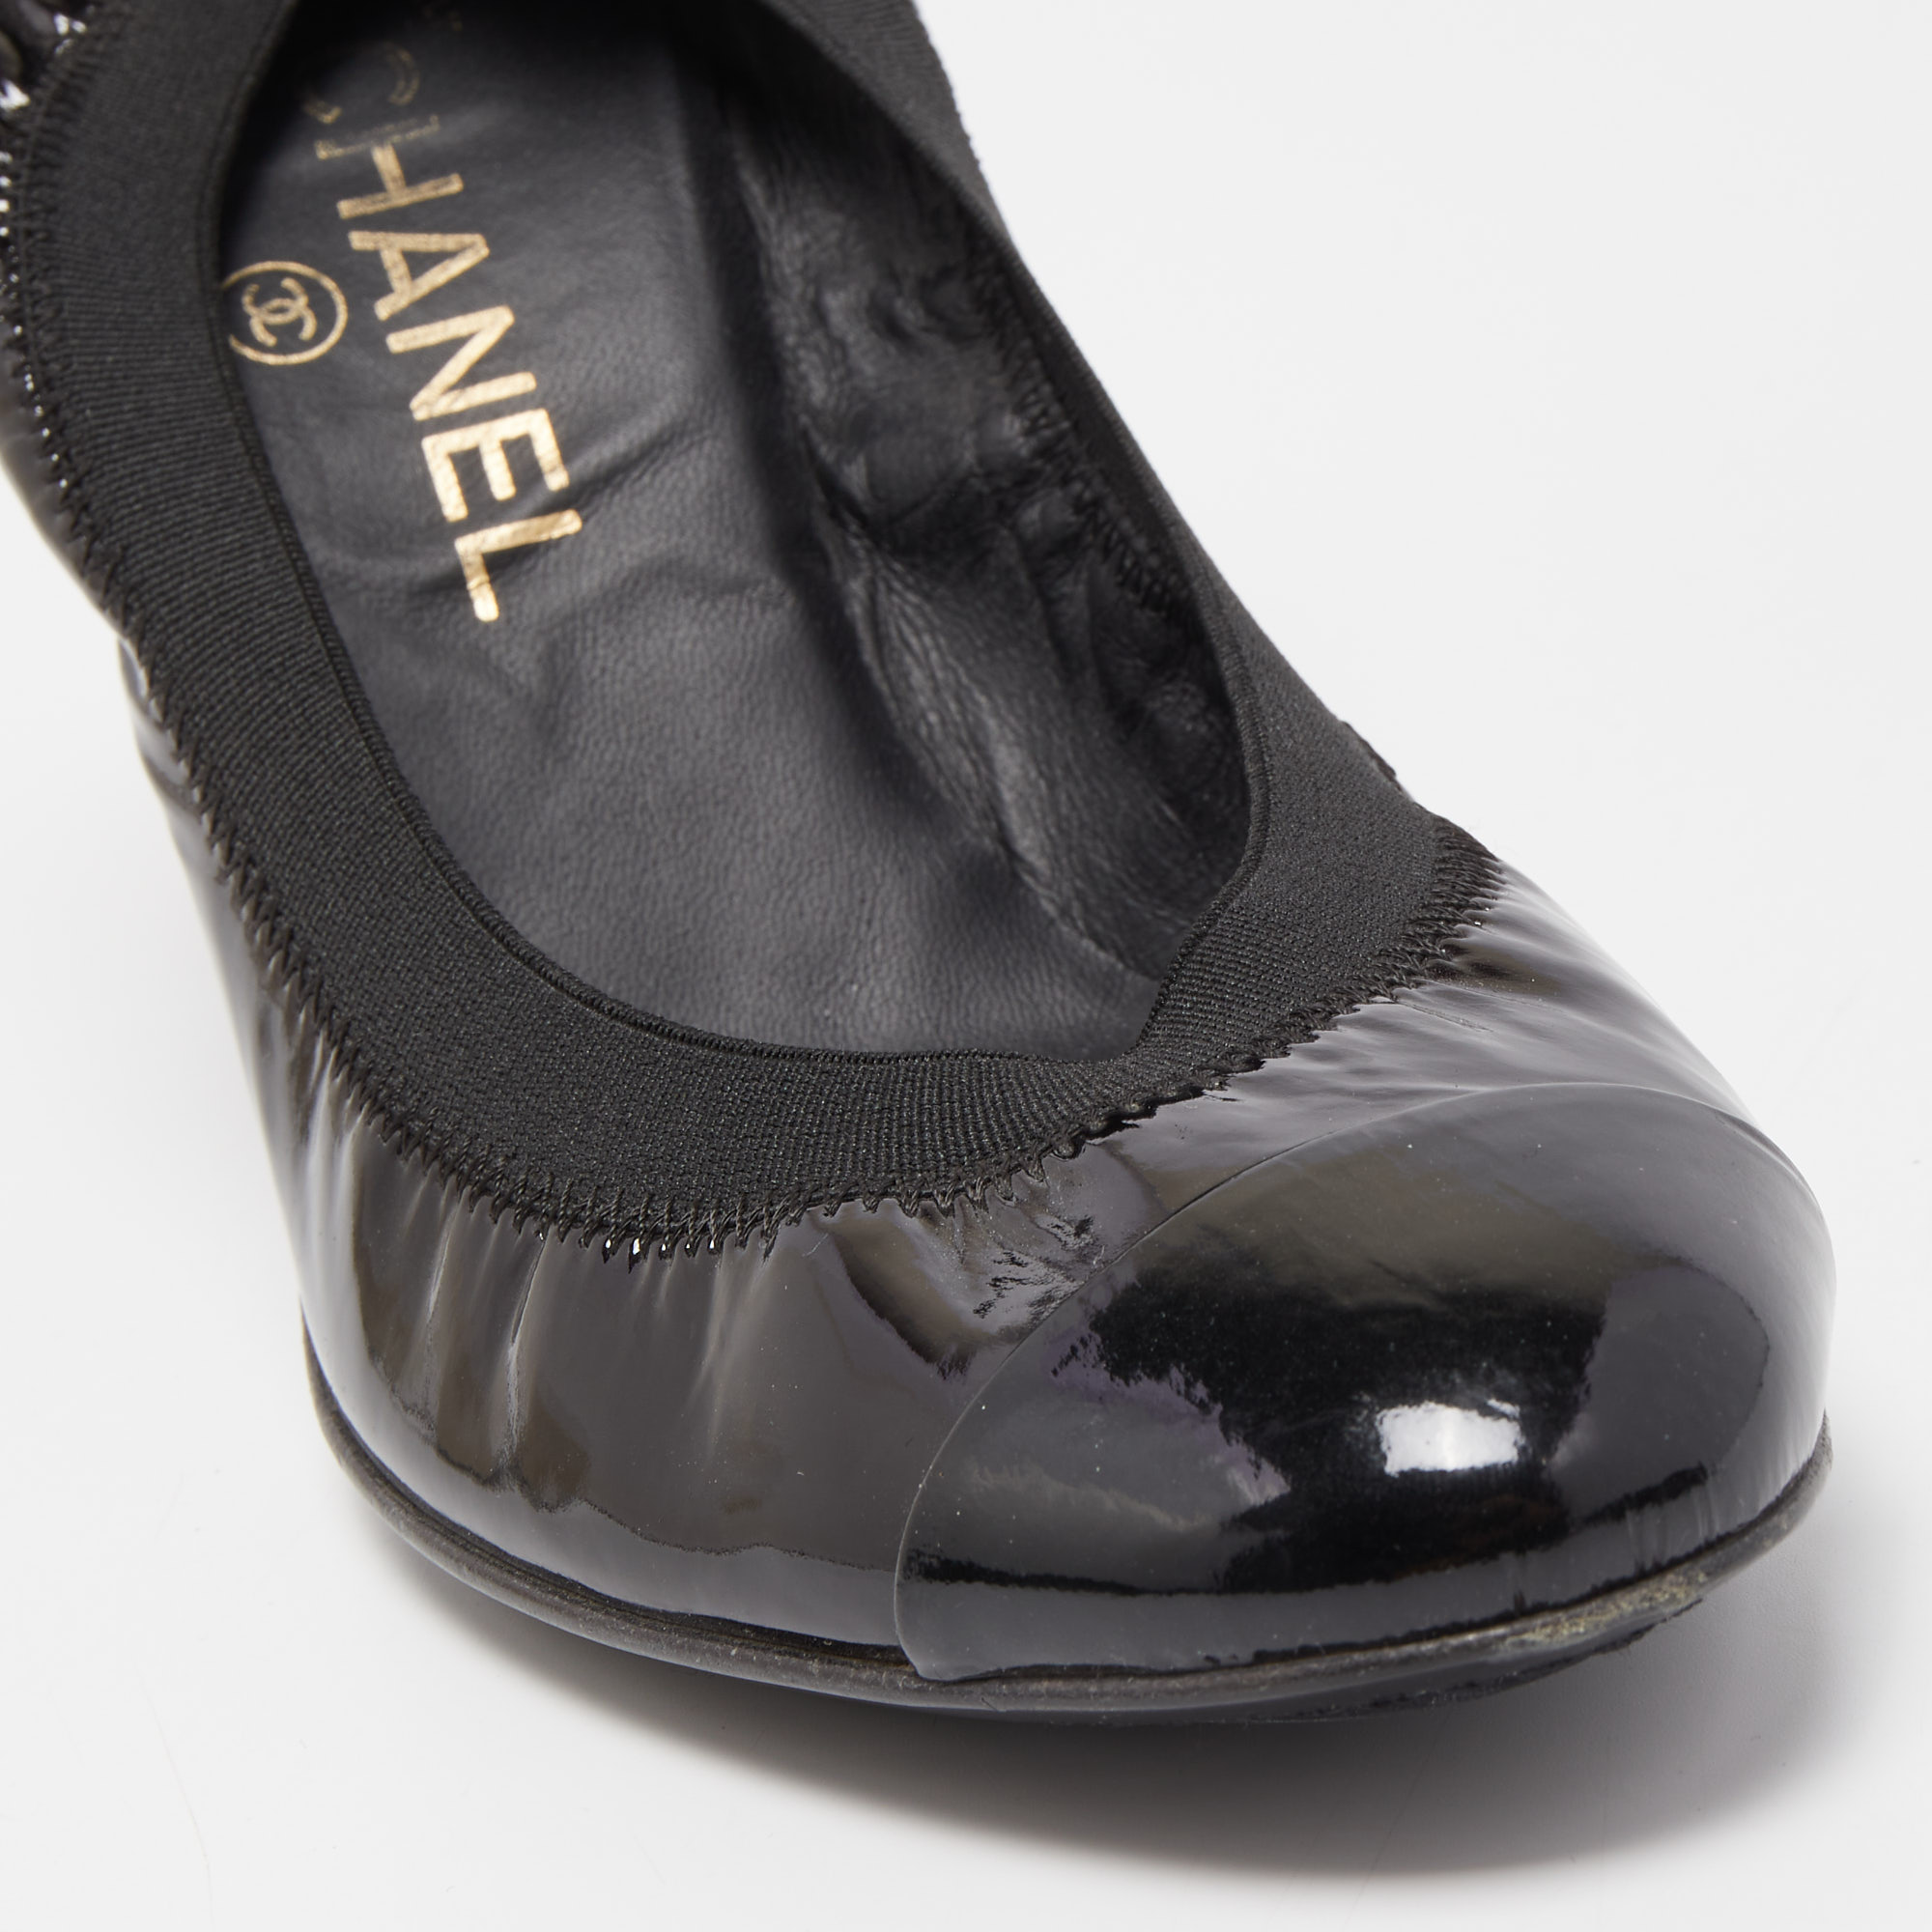 Chanel Black Patent Leather CC Scrunch Pumps Size 39.5